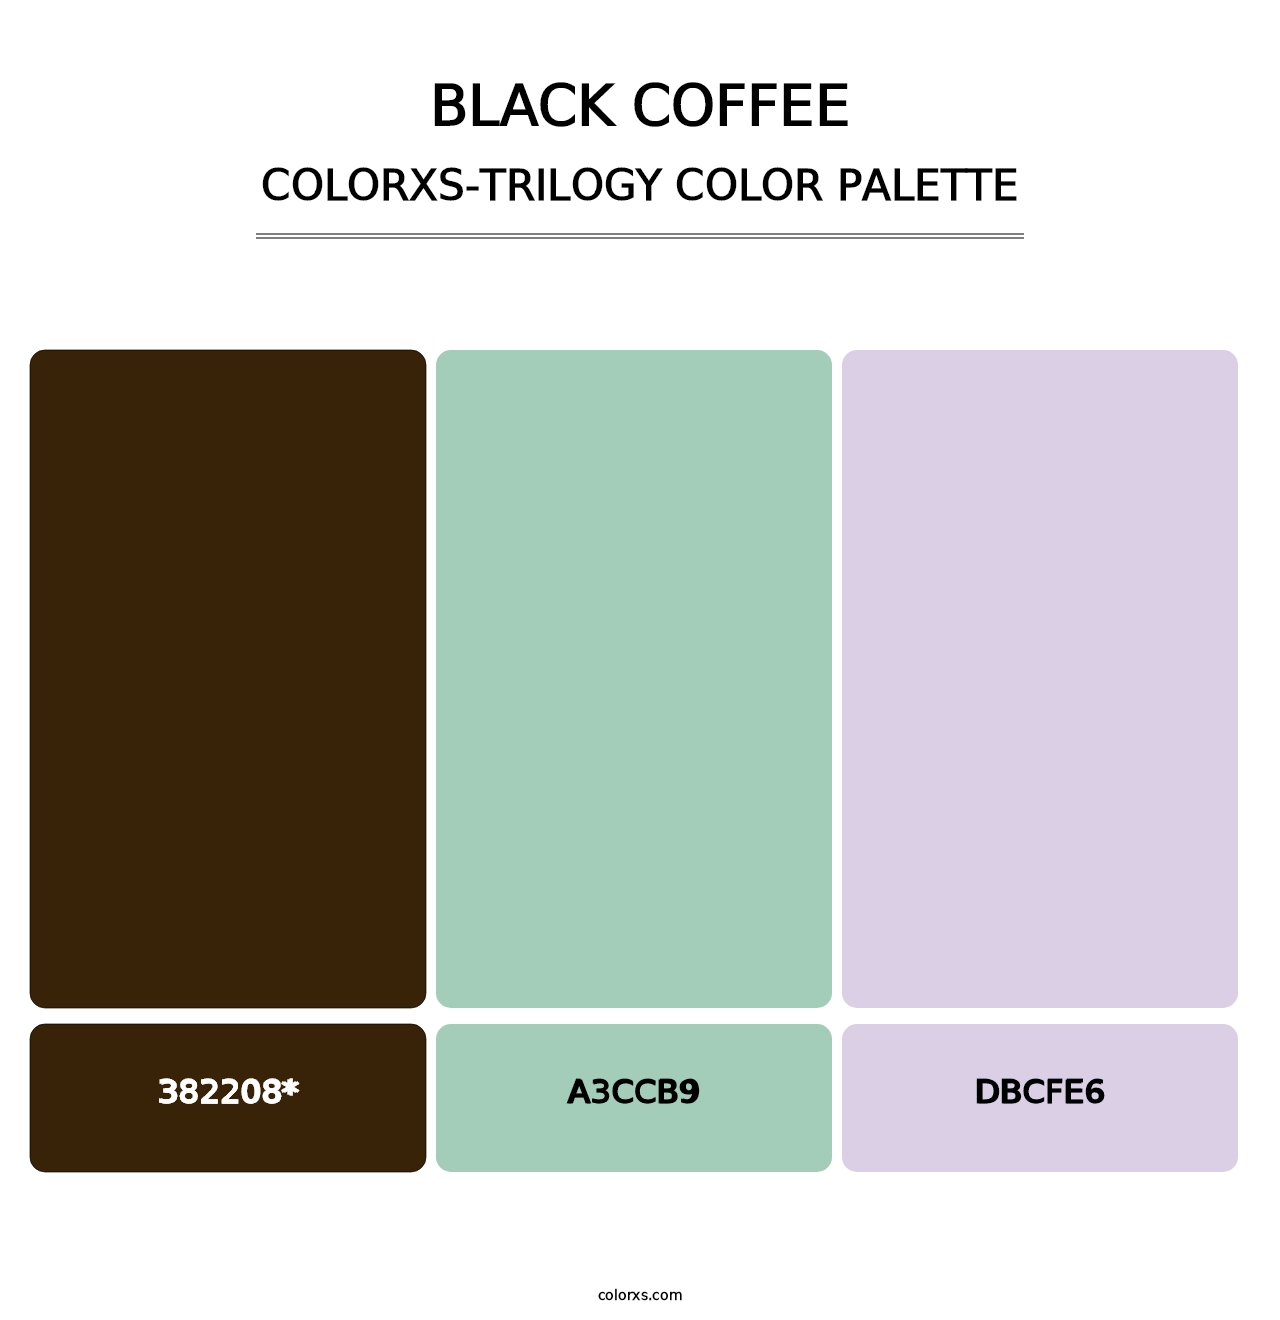 Black Coffee - Colorxs Trilogy Palette